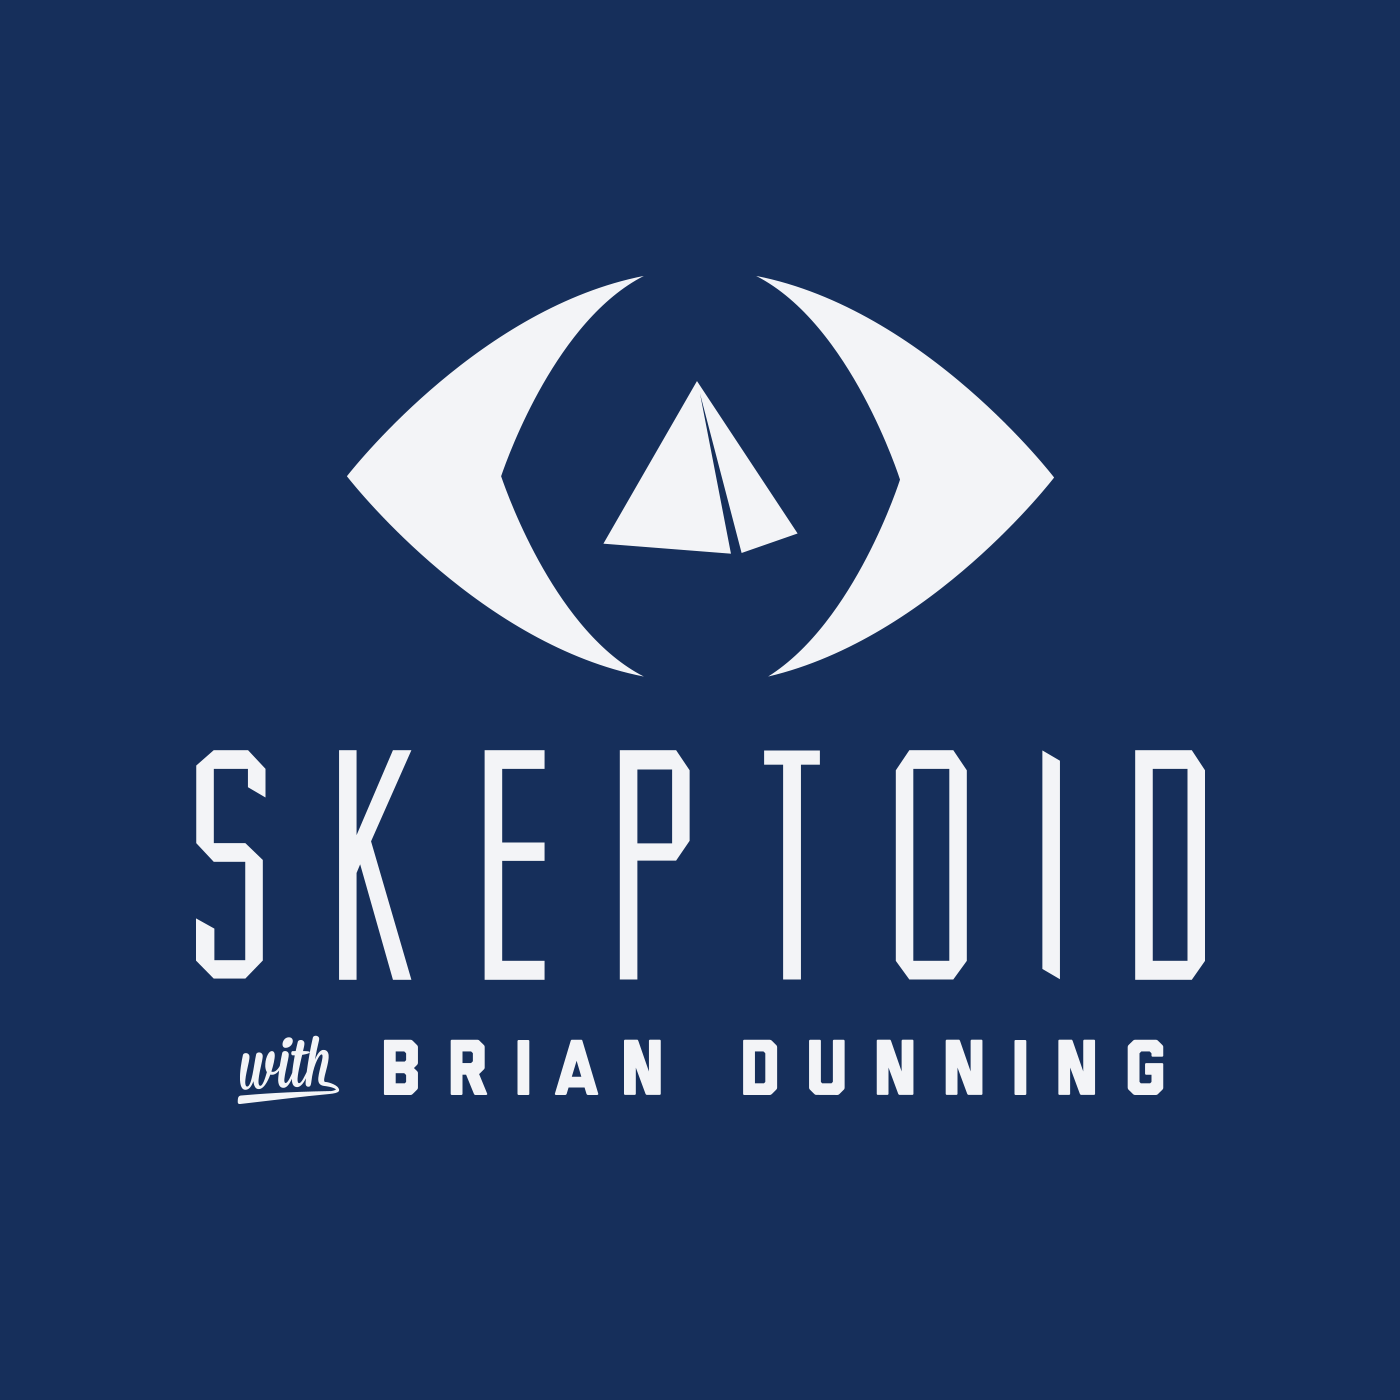 Skeptoid - Brian Dunning